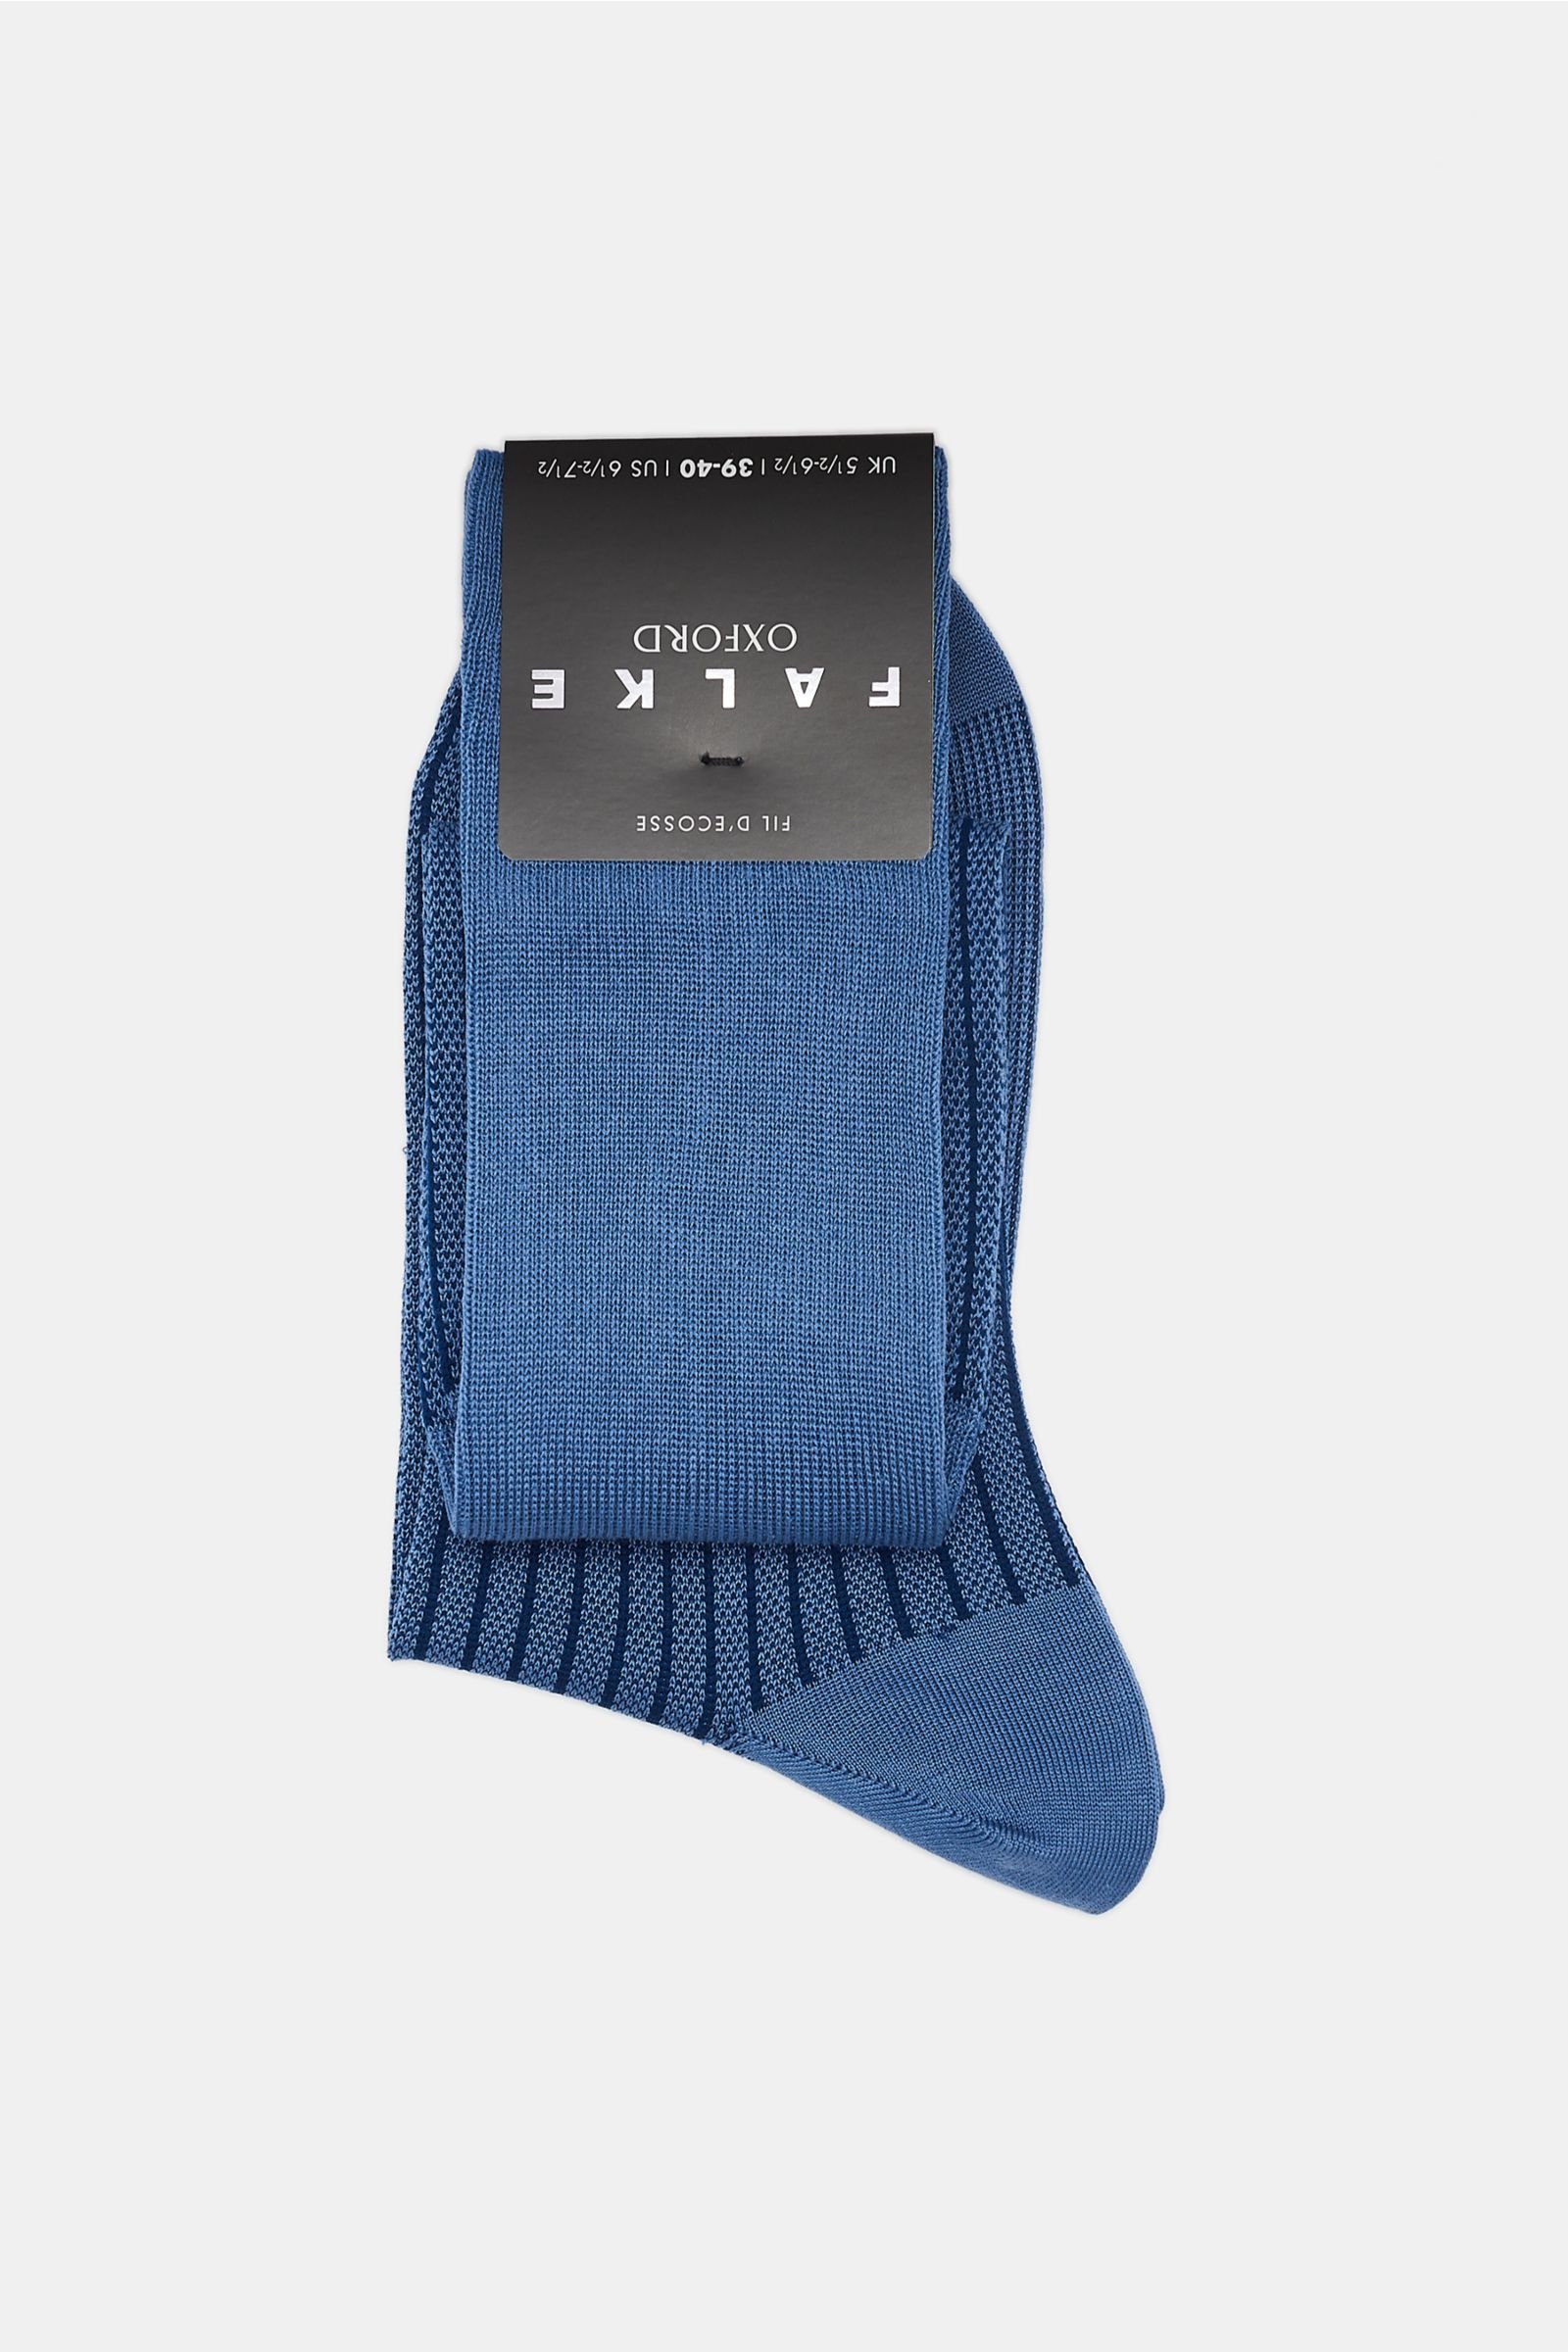 Knee high socks 'Oxford Stripe' smoky blue/navy striped